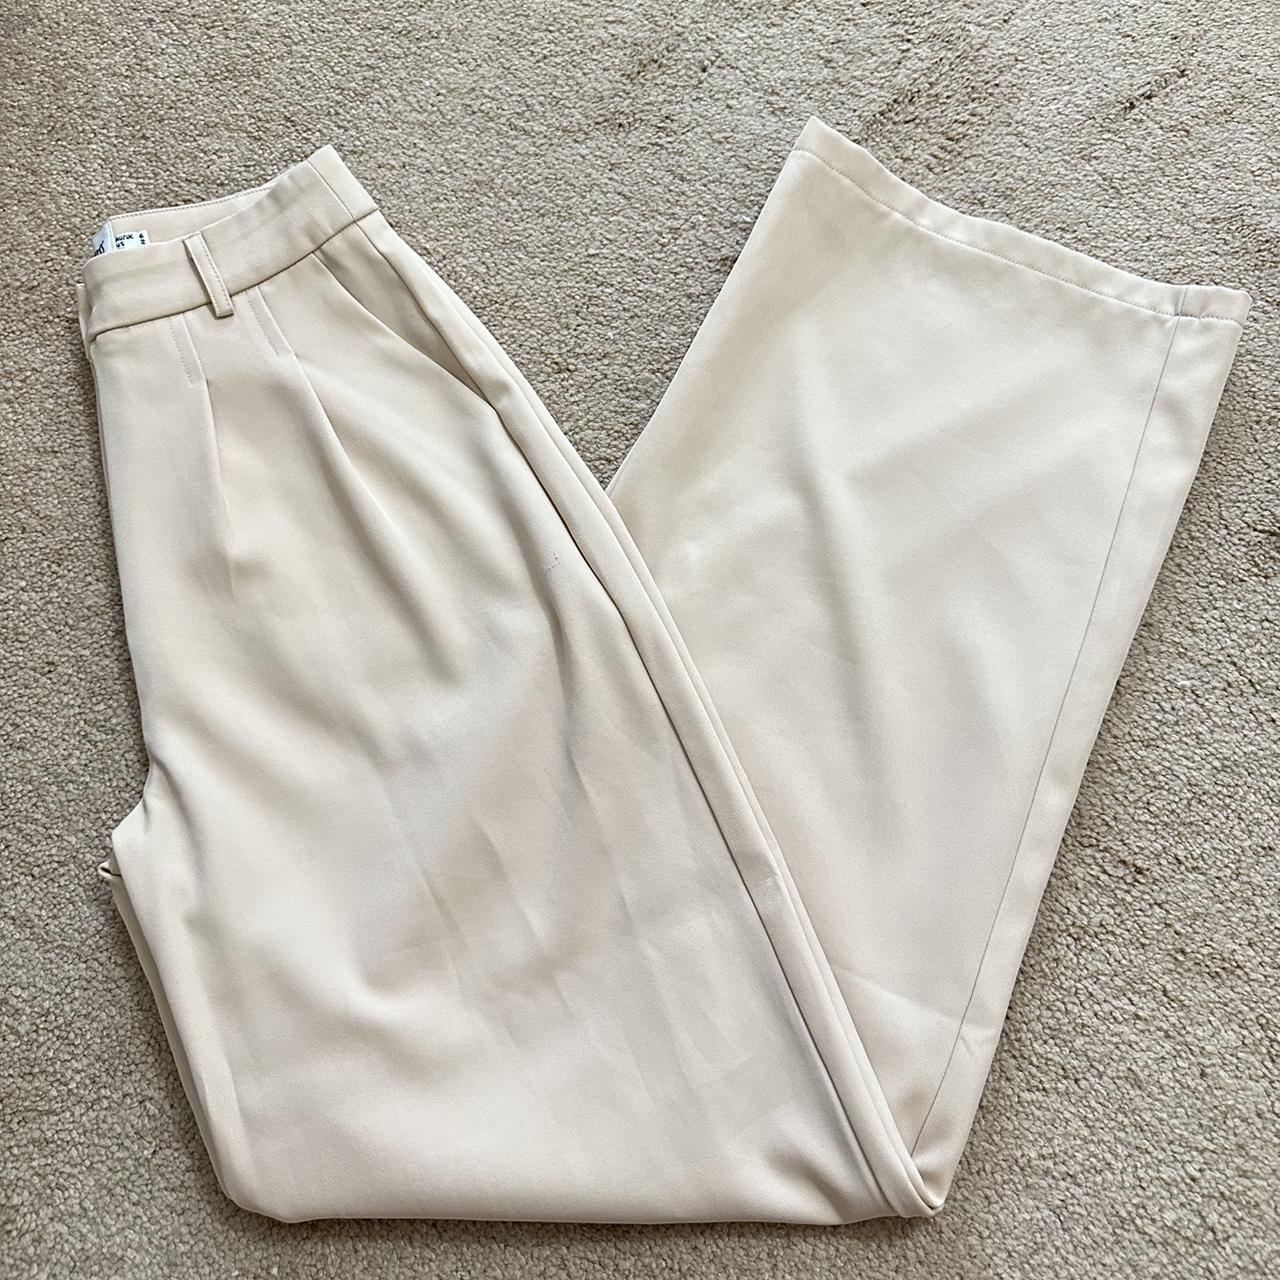 Princess Polly archer pants color beige size US 2.... - Depop